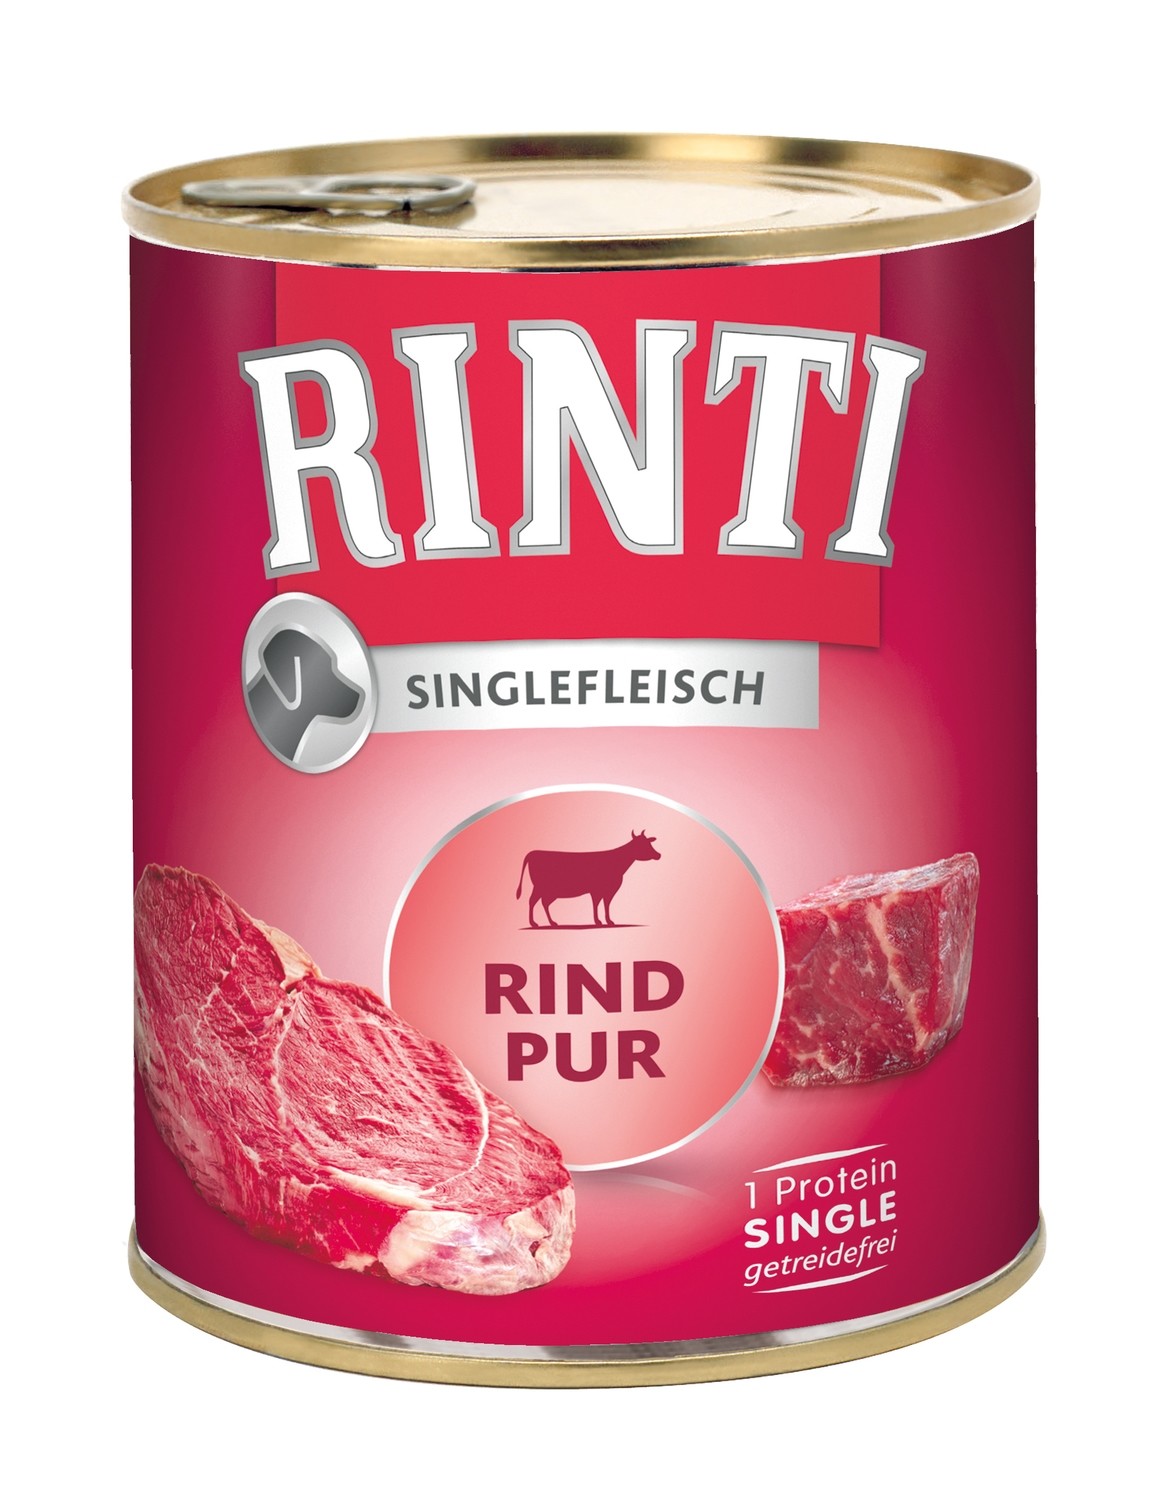 Rinti • Singlefleisch • Rind Pur